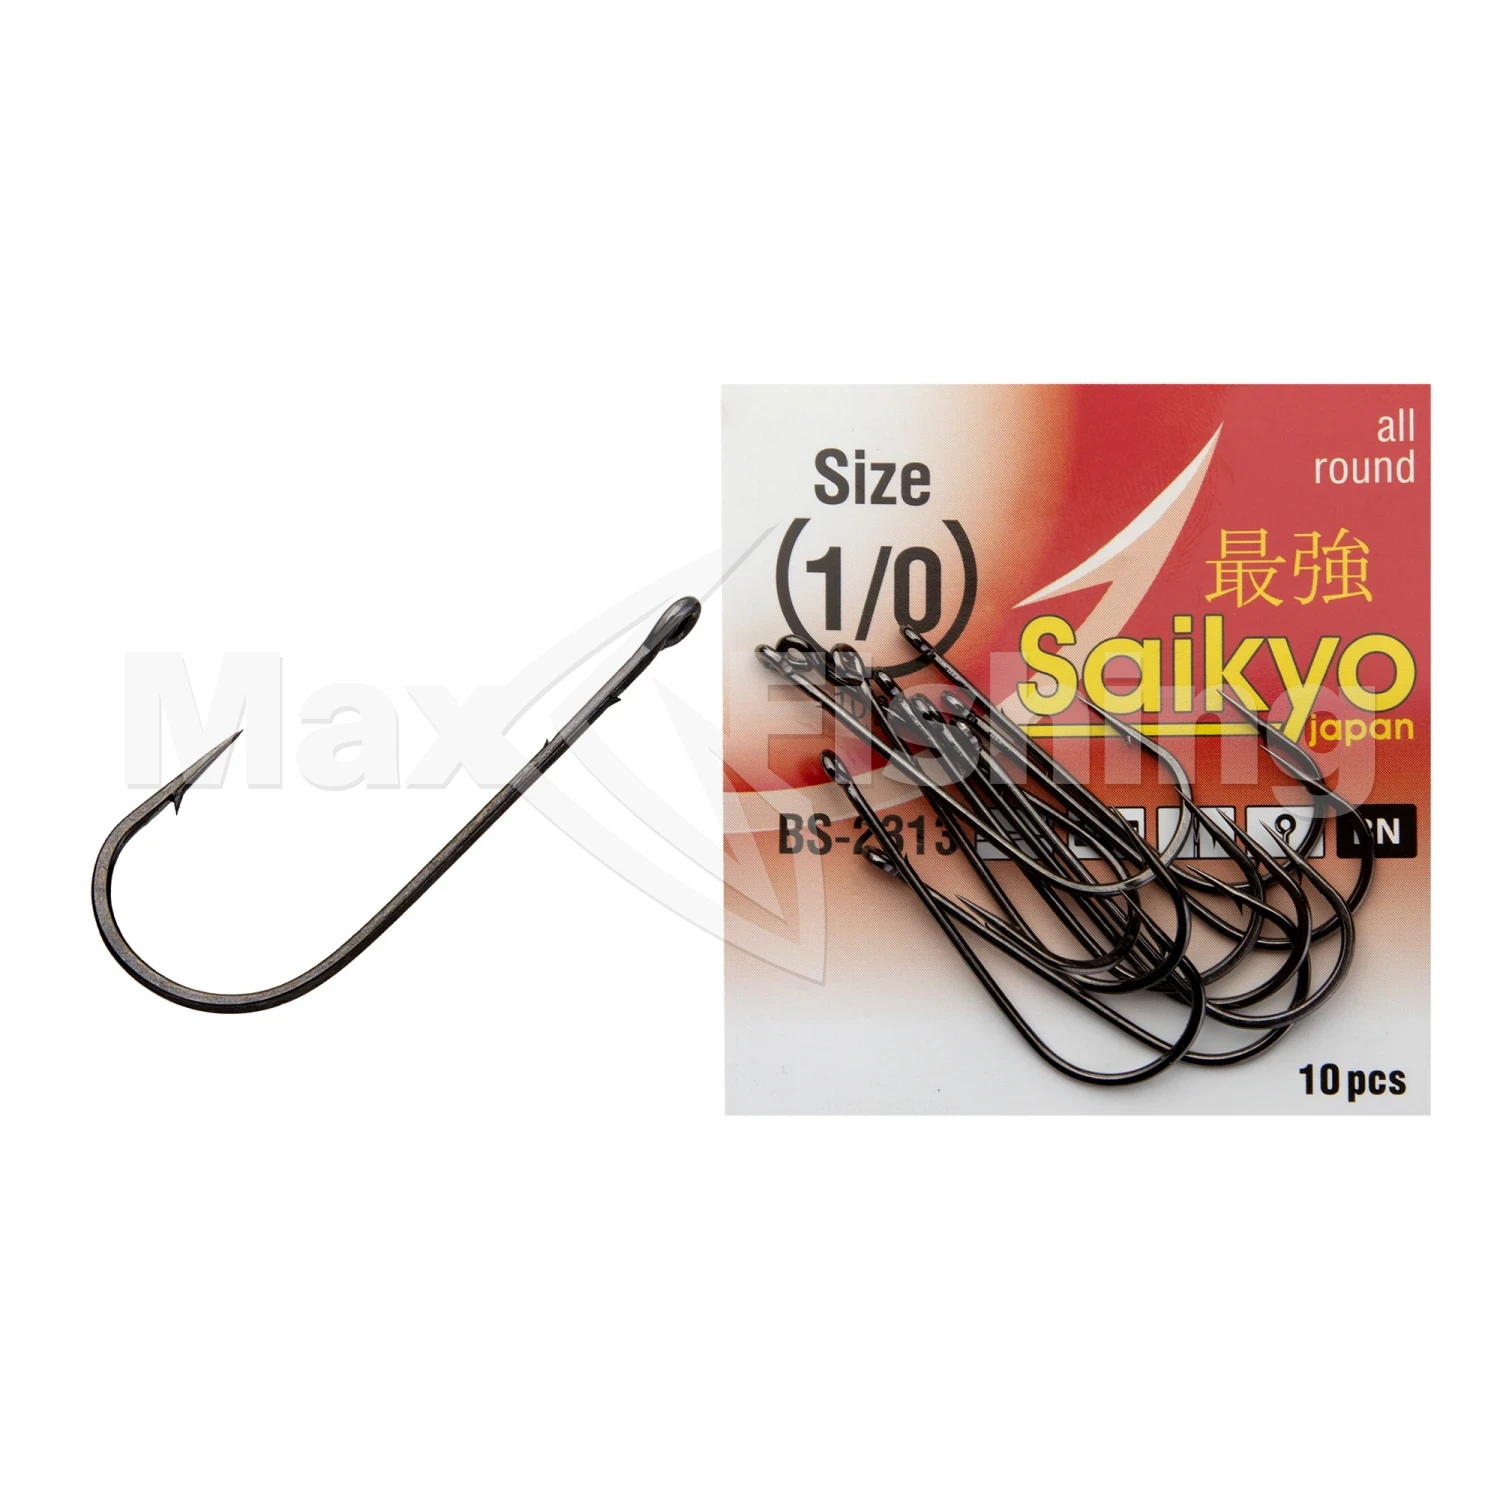 Крючок одинарный Saikyo Bs-2313 Bn #1/0 (10шт)